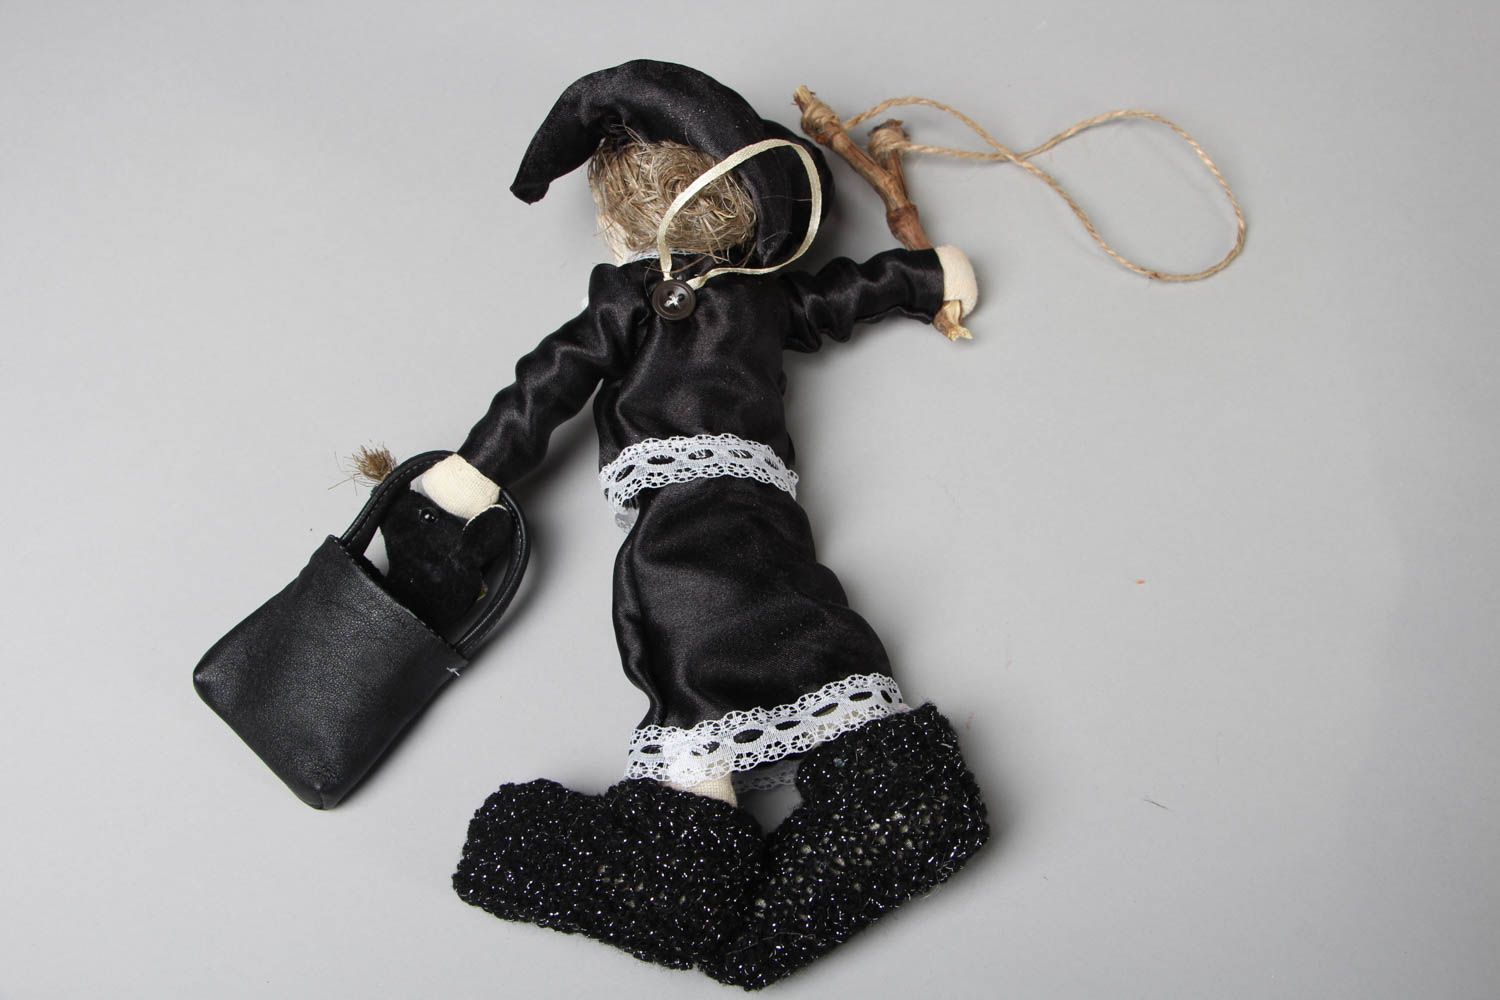 Textil Puppe handmade Dame in Schwarz foto 3